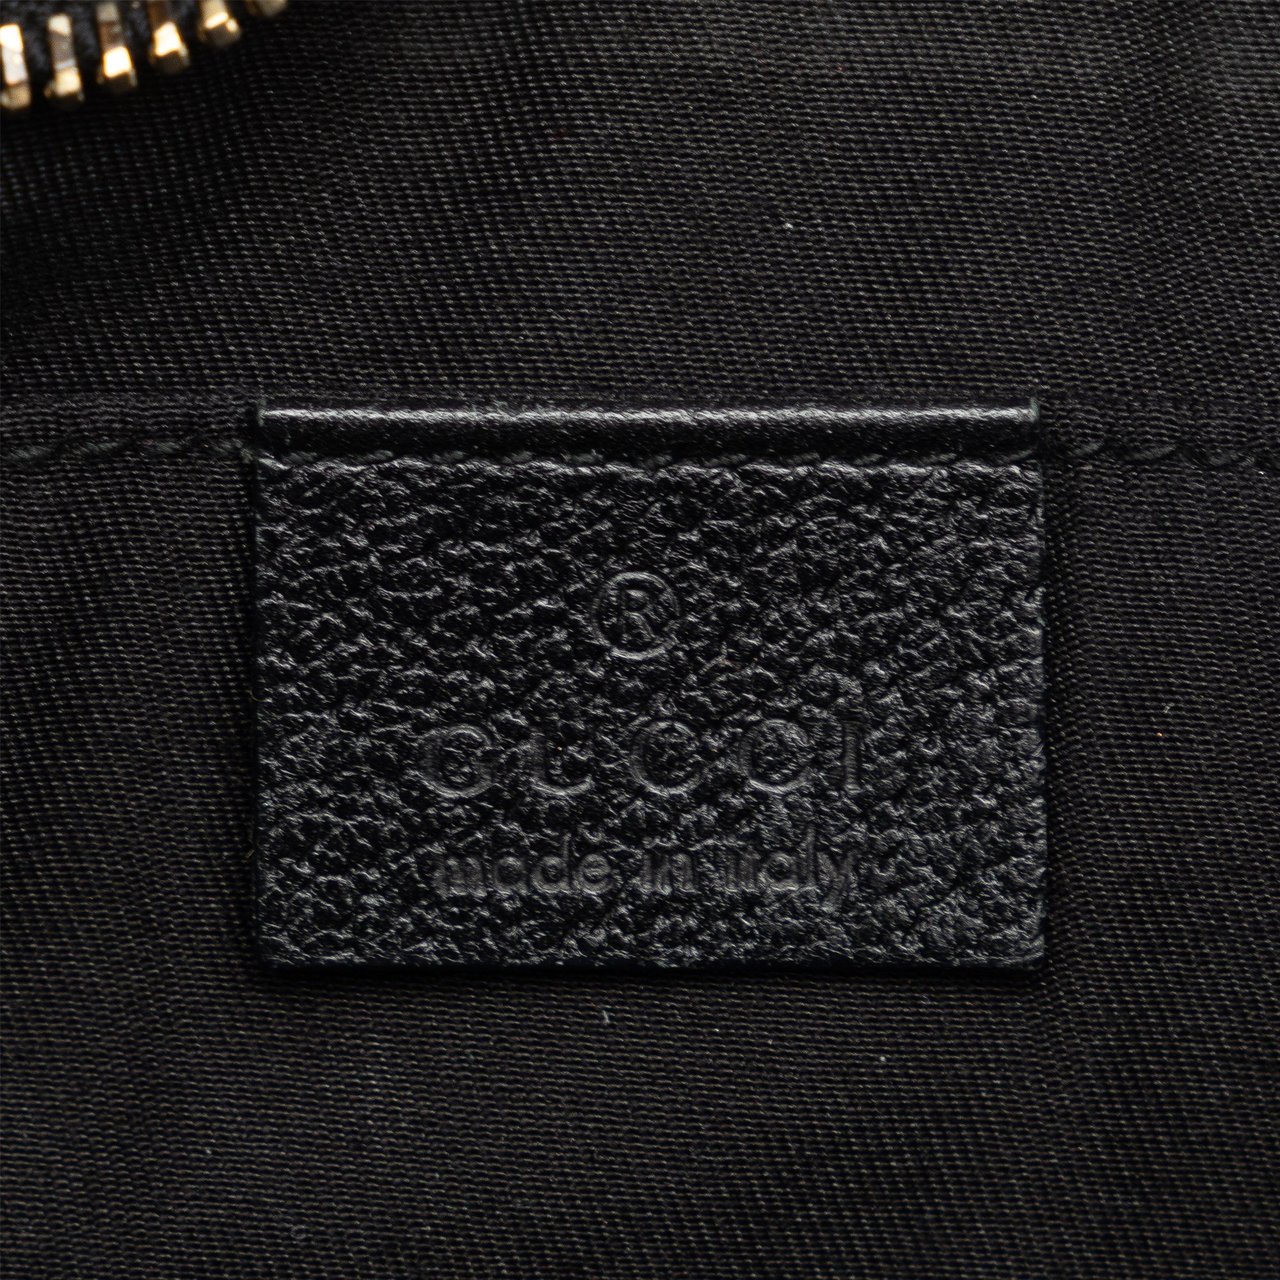 Gucci Abbey D-Ring Shoulder Bag Zwart